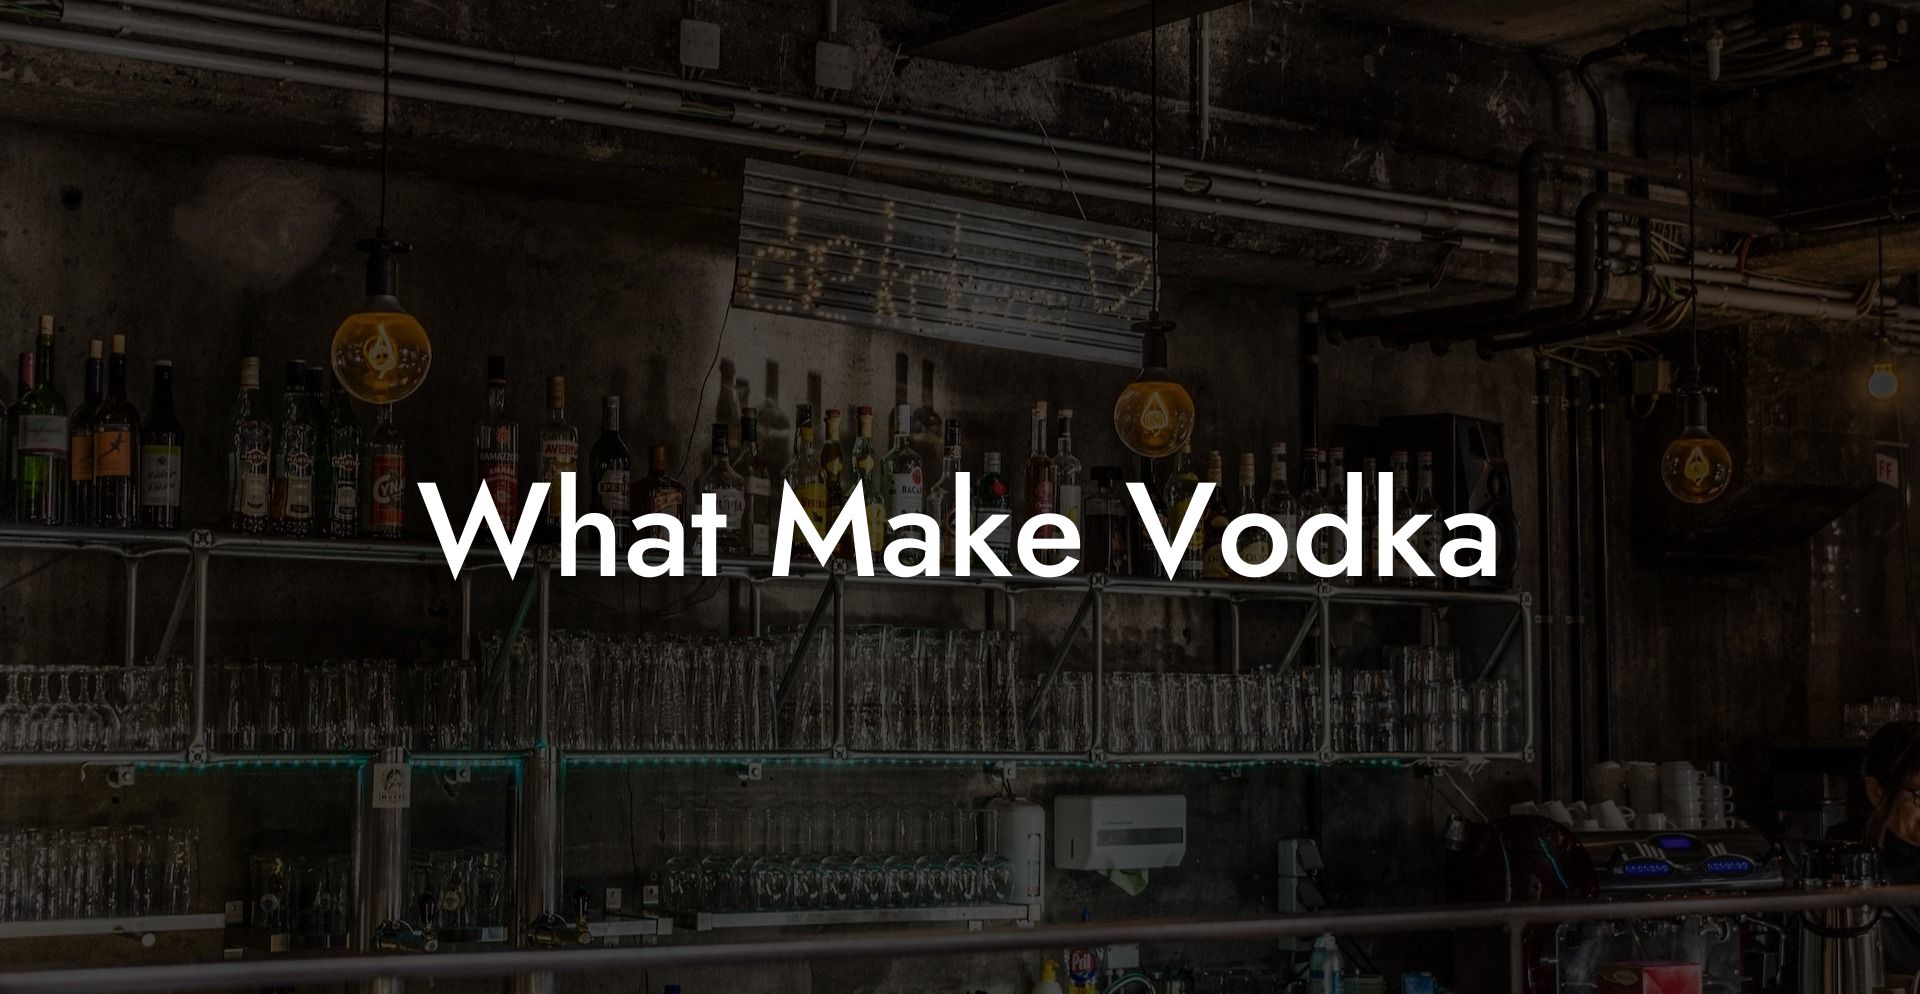 What Make Vodka